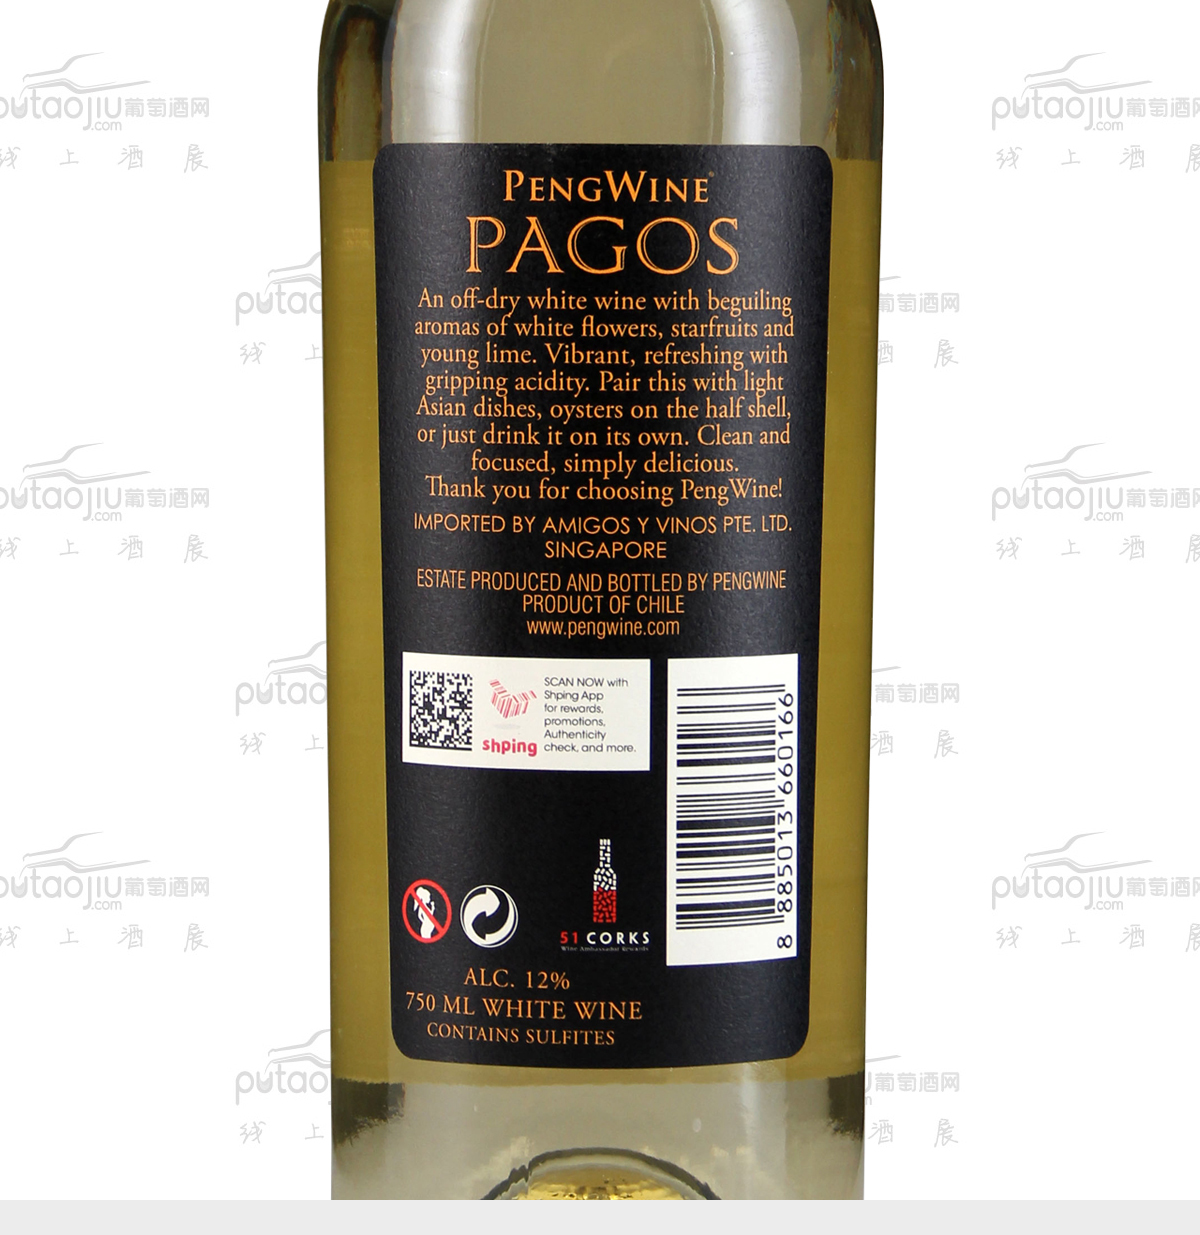 智利迈坡谷pengwine酒庄经典系列霞多丽长相思帕高斯干白葡萄酒